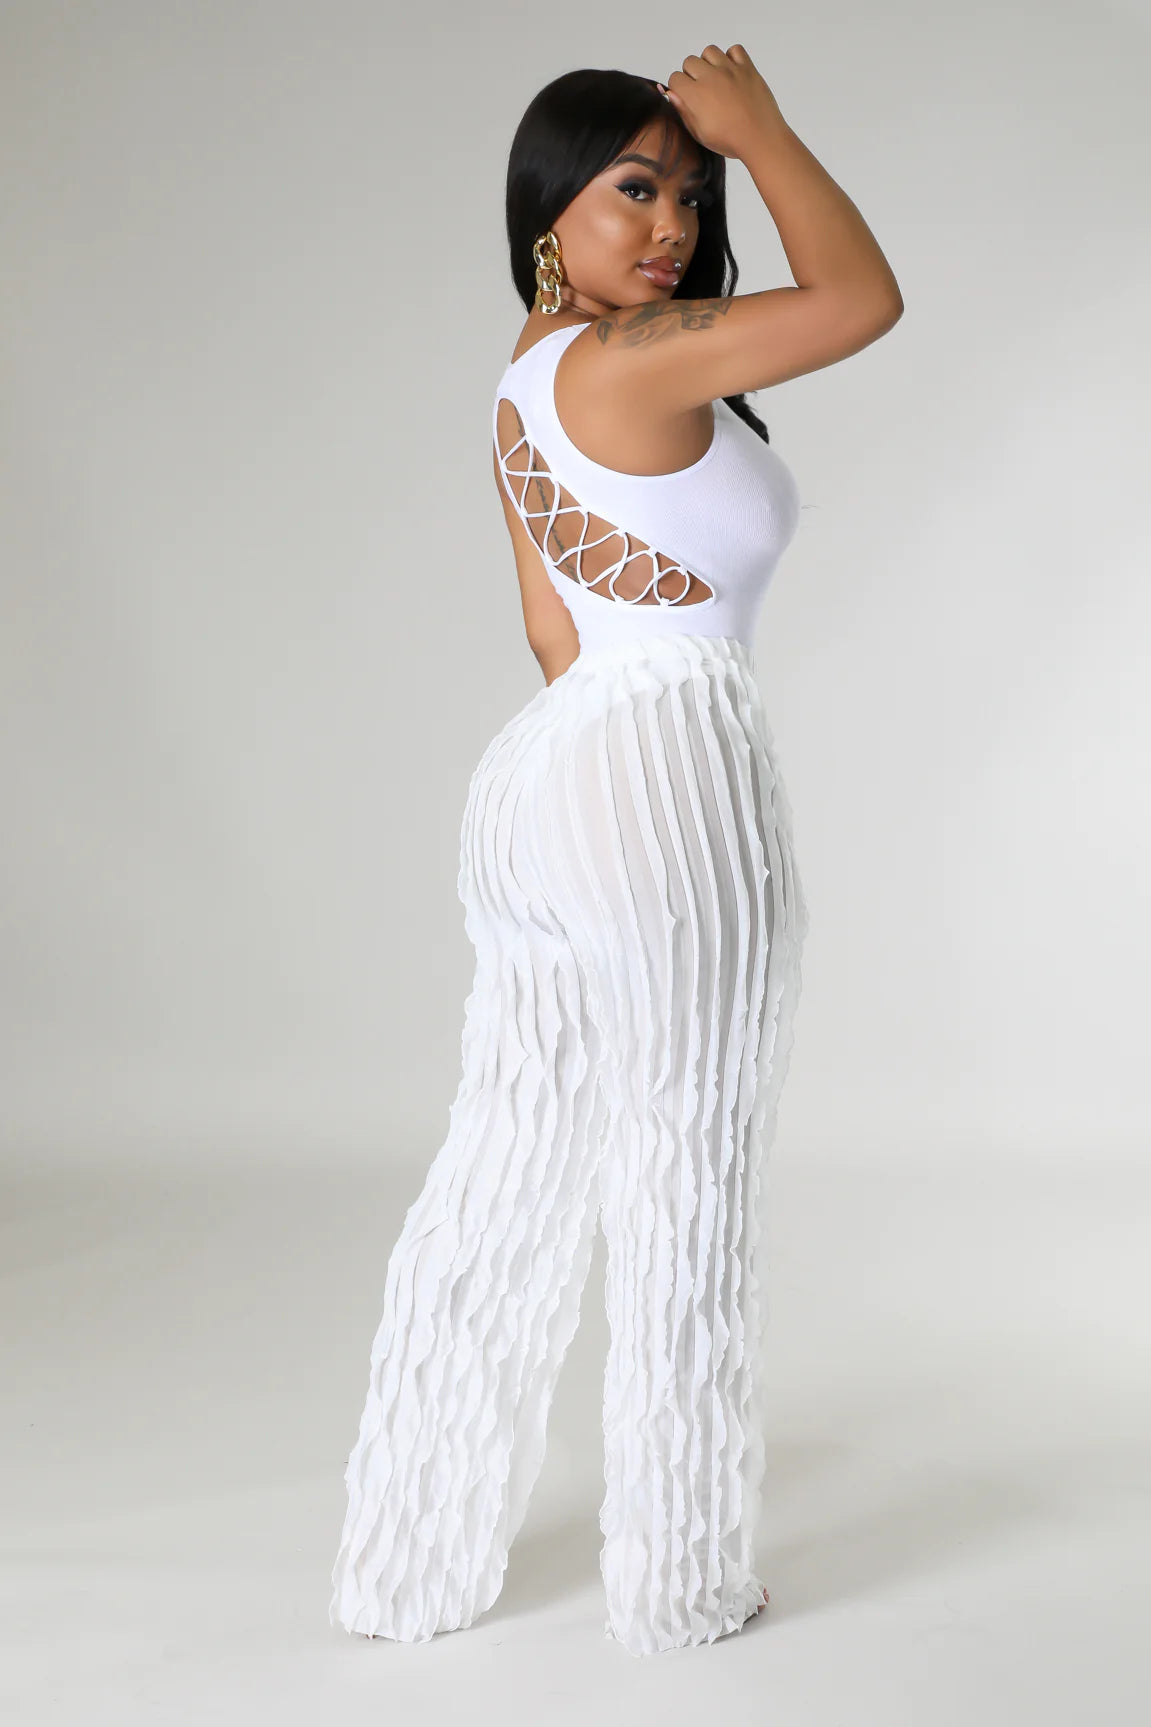 Midici Cutout Bodysuit White - Ali’s Couture 